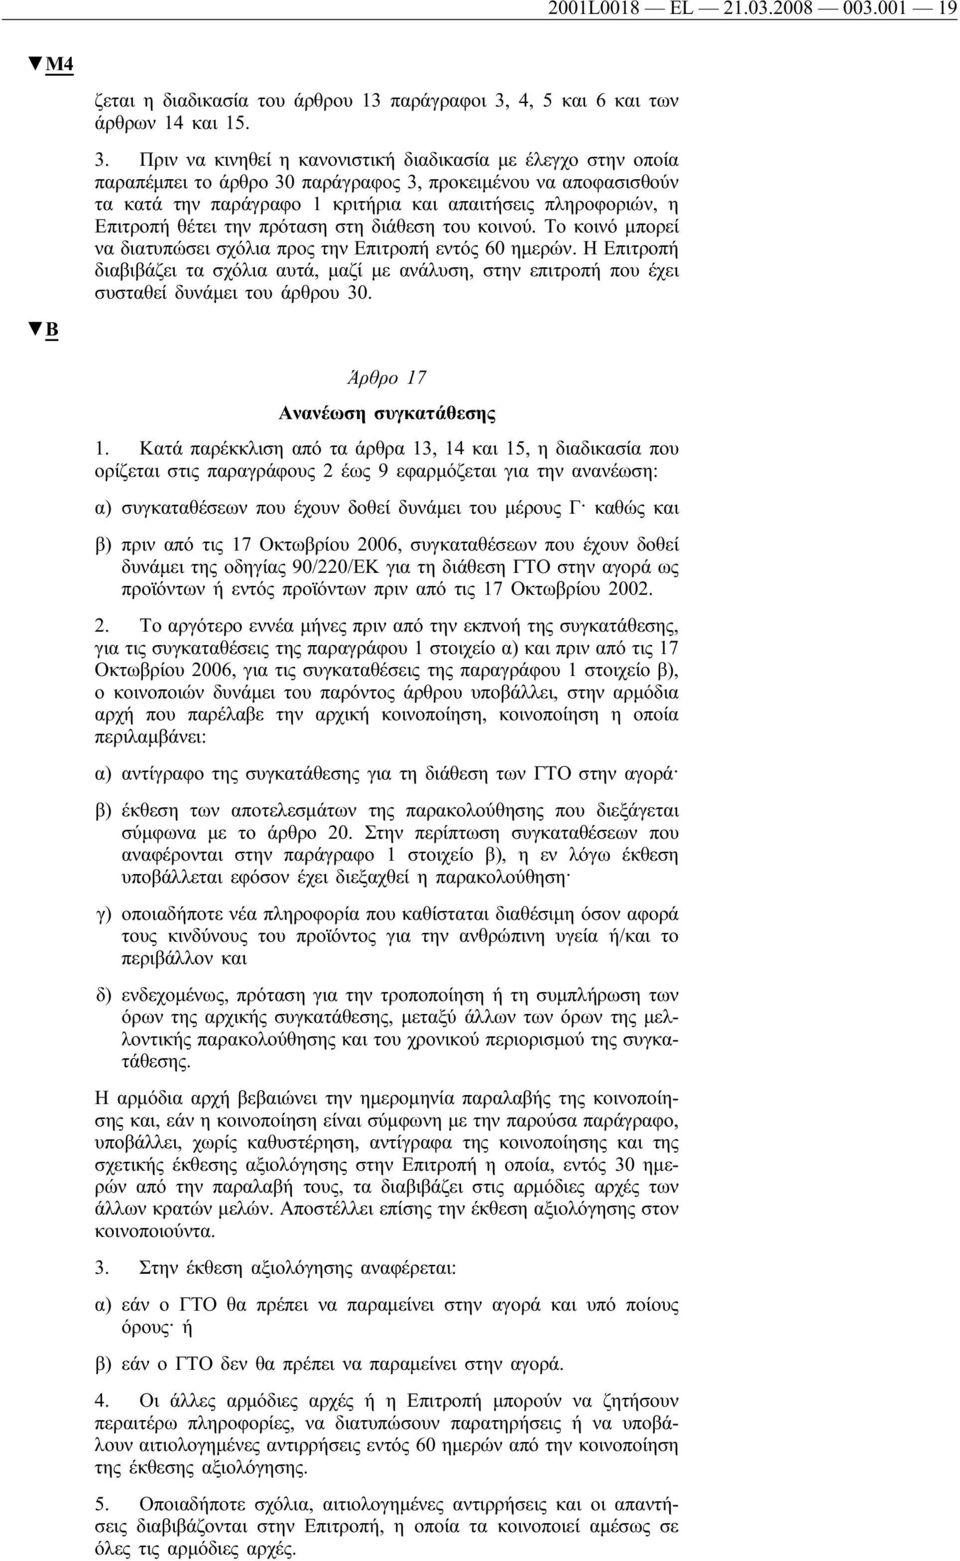 Πριν να κινηθεί η κανονιστική διαδικασία με έλεγχο στην οποία παραπέμπει το άρθρο 30 παράγραφος 3, προκειμένου να αποφασισθούν τα κατά την παράγραφο 1 κριτήρια και απαιτήσεις πληροφοριών, η Επιτροπή